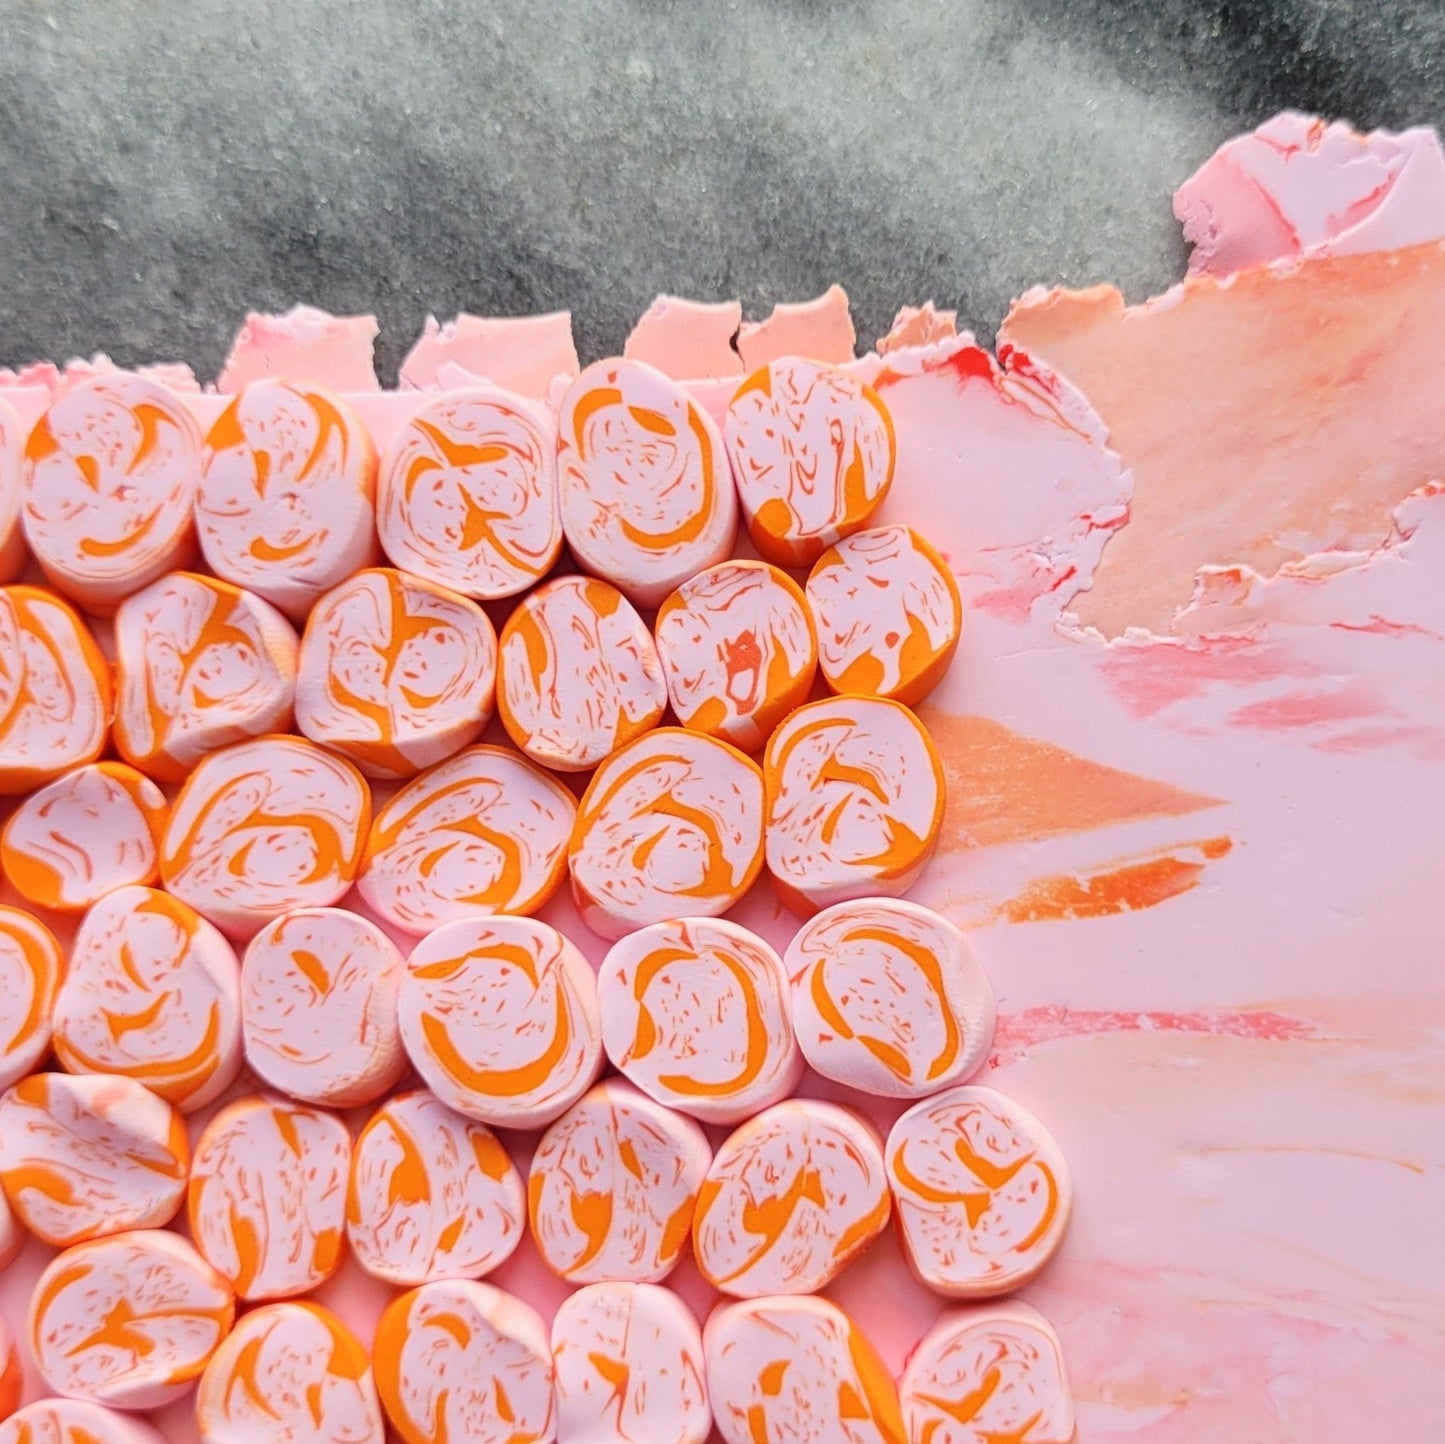 Creolenanhänger aus Ton in rosa und orange - 90s Vibes